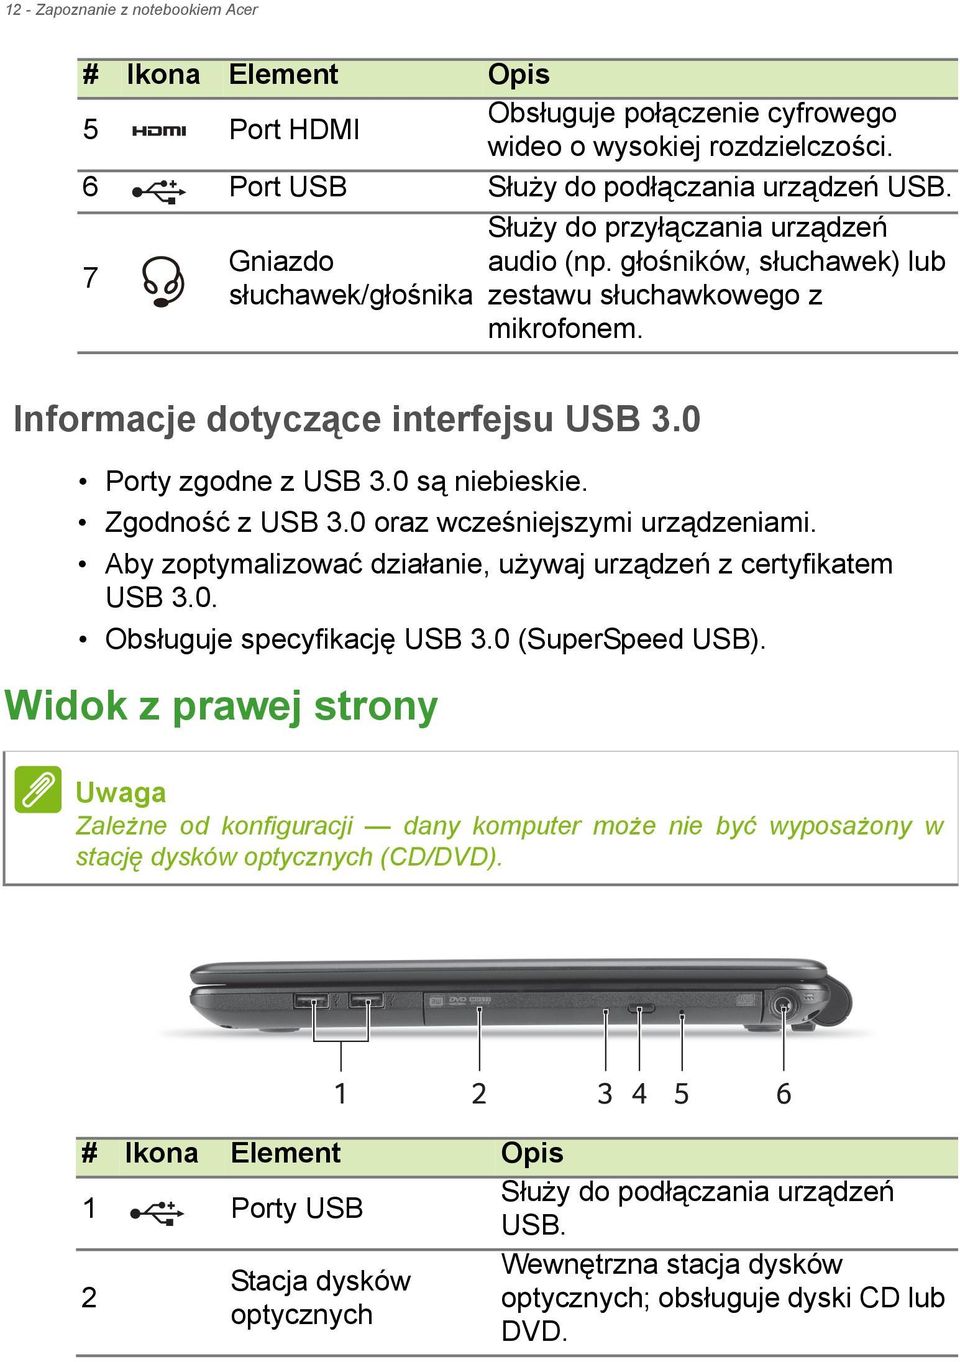 0 są niebieskie. Zgodność z USB 3.0 oraz wcześniejszymi urządzeniami. Aby zoptymalizować działanie, używaj urządzeń z certyfikatem USB 3.0. Obsługuje specyfikację USB 3.0 (SuperSpeed USB).